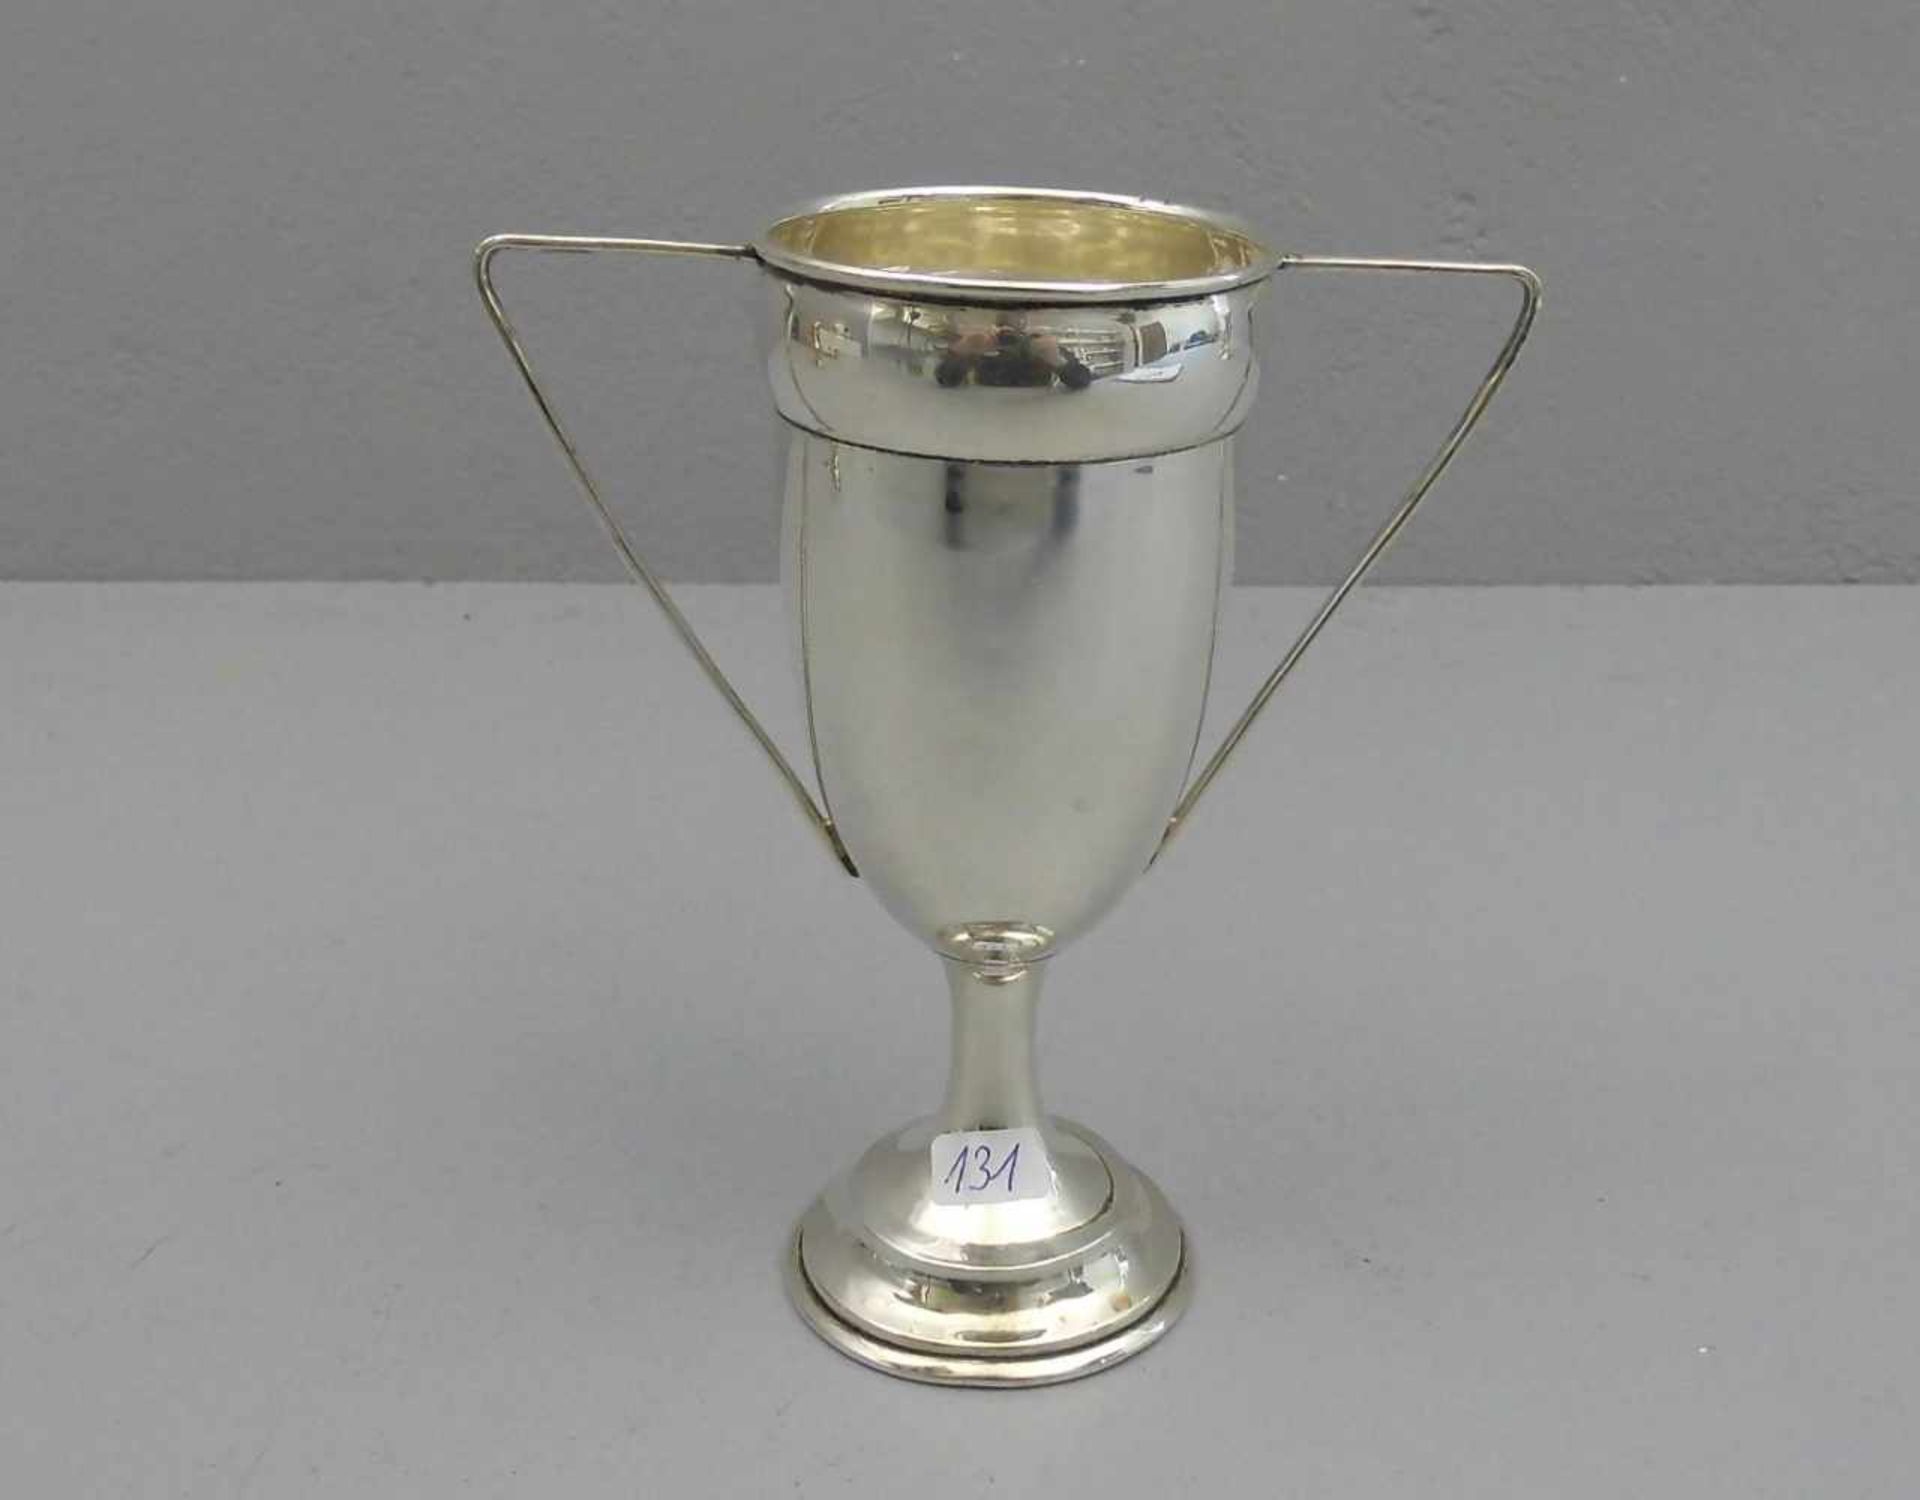 POKAL / HENKELVASE / goblet, 925er Sterlingsilber (101 g), England / London, 1930, Meistermarke "